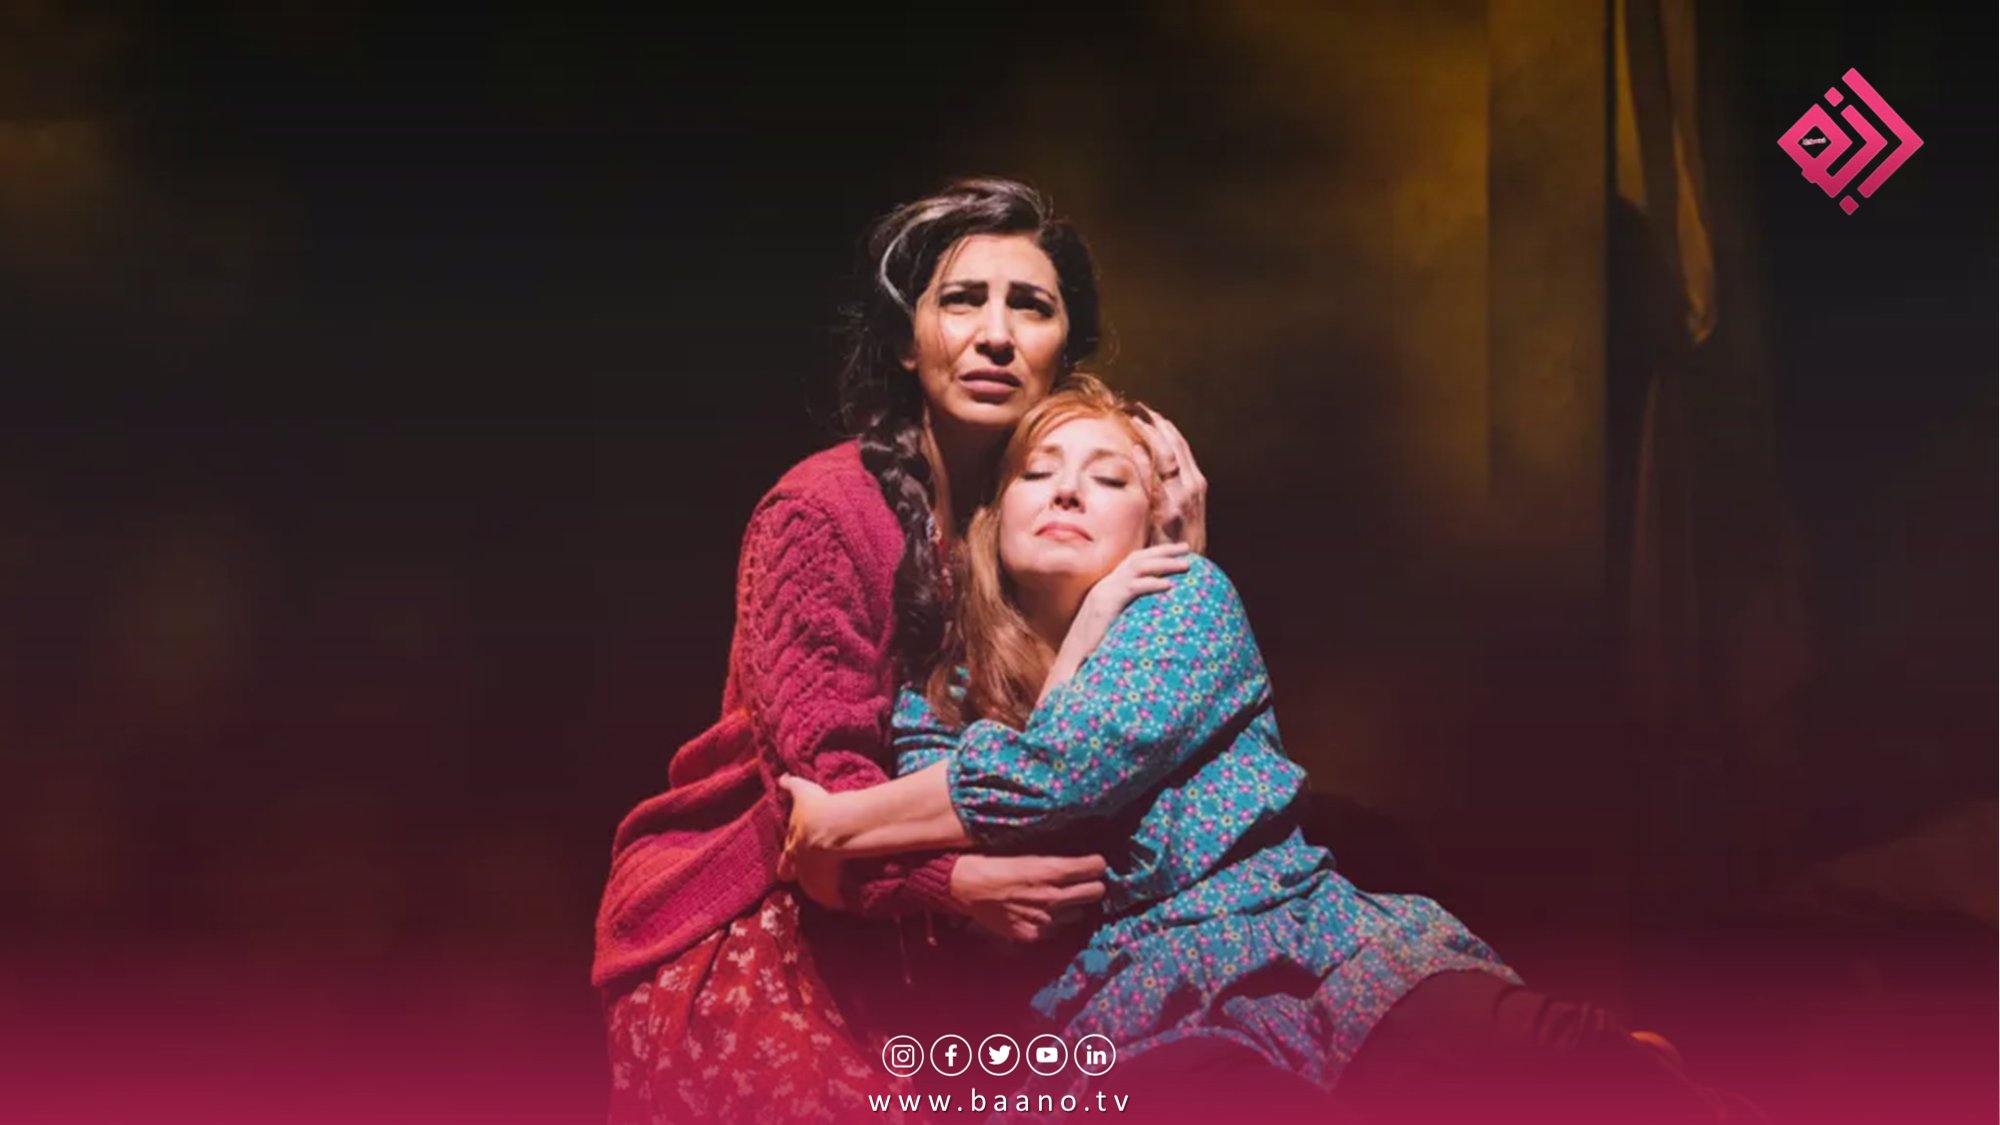 اپرای سیاتل داستان زنان افغان را به روی صحنه می برد